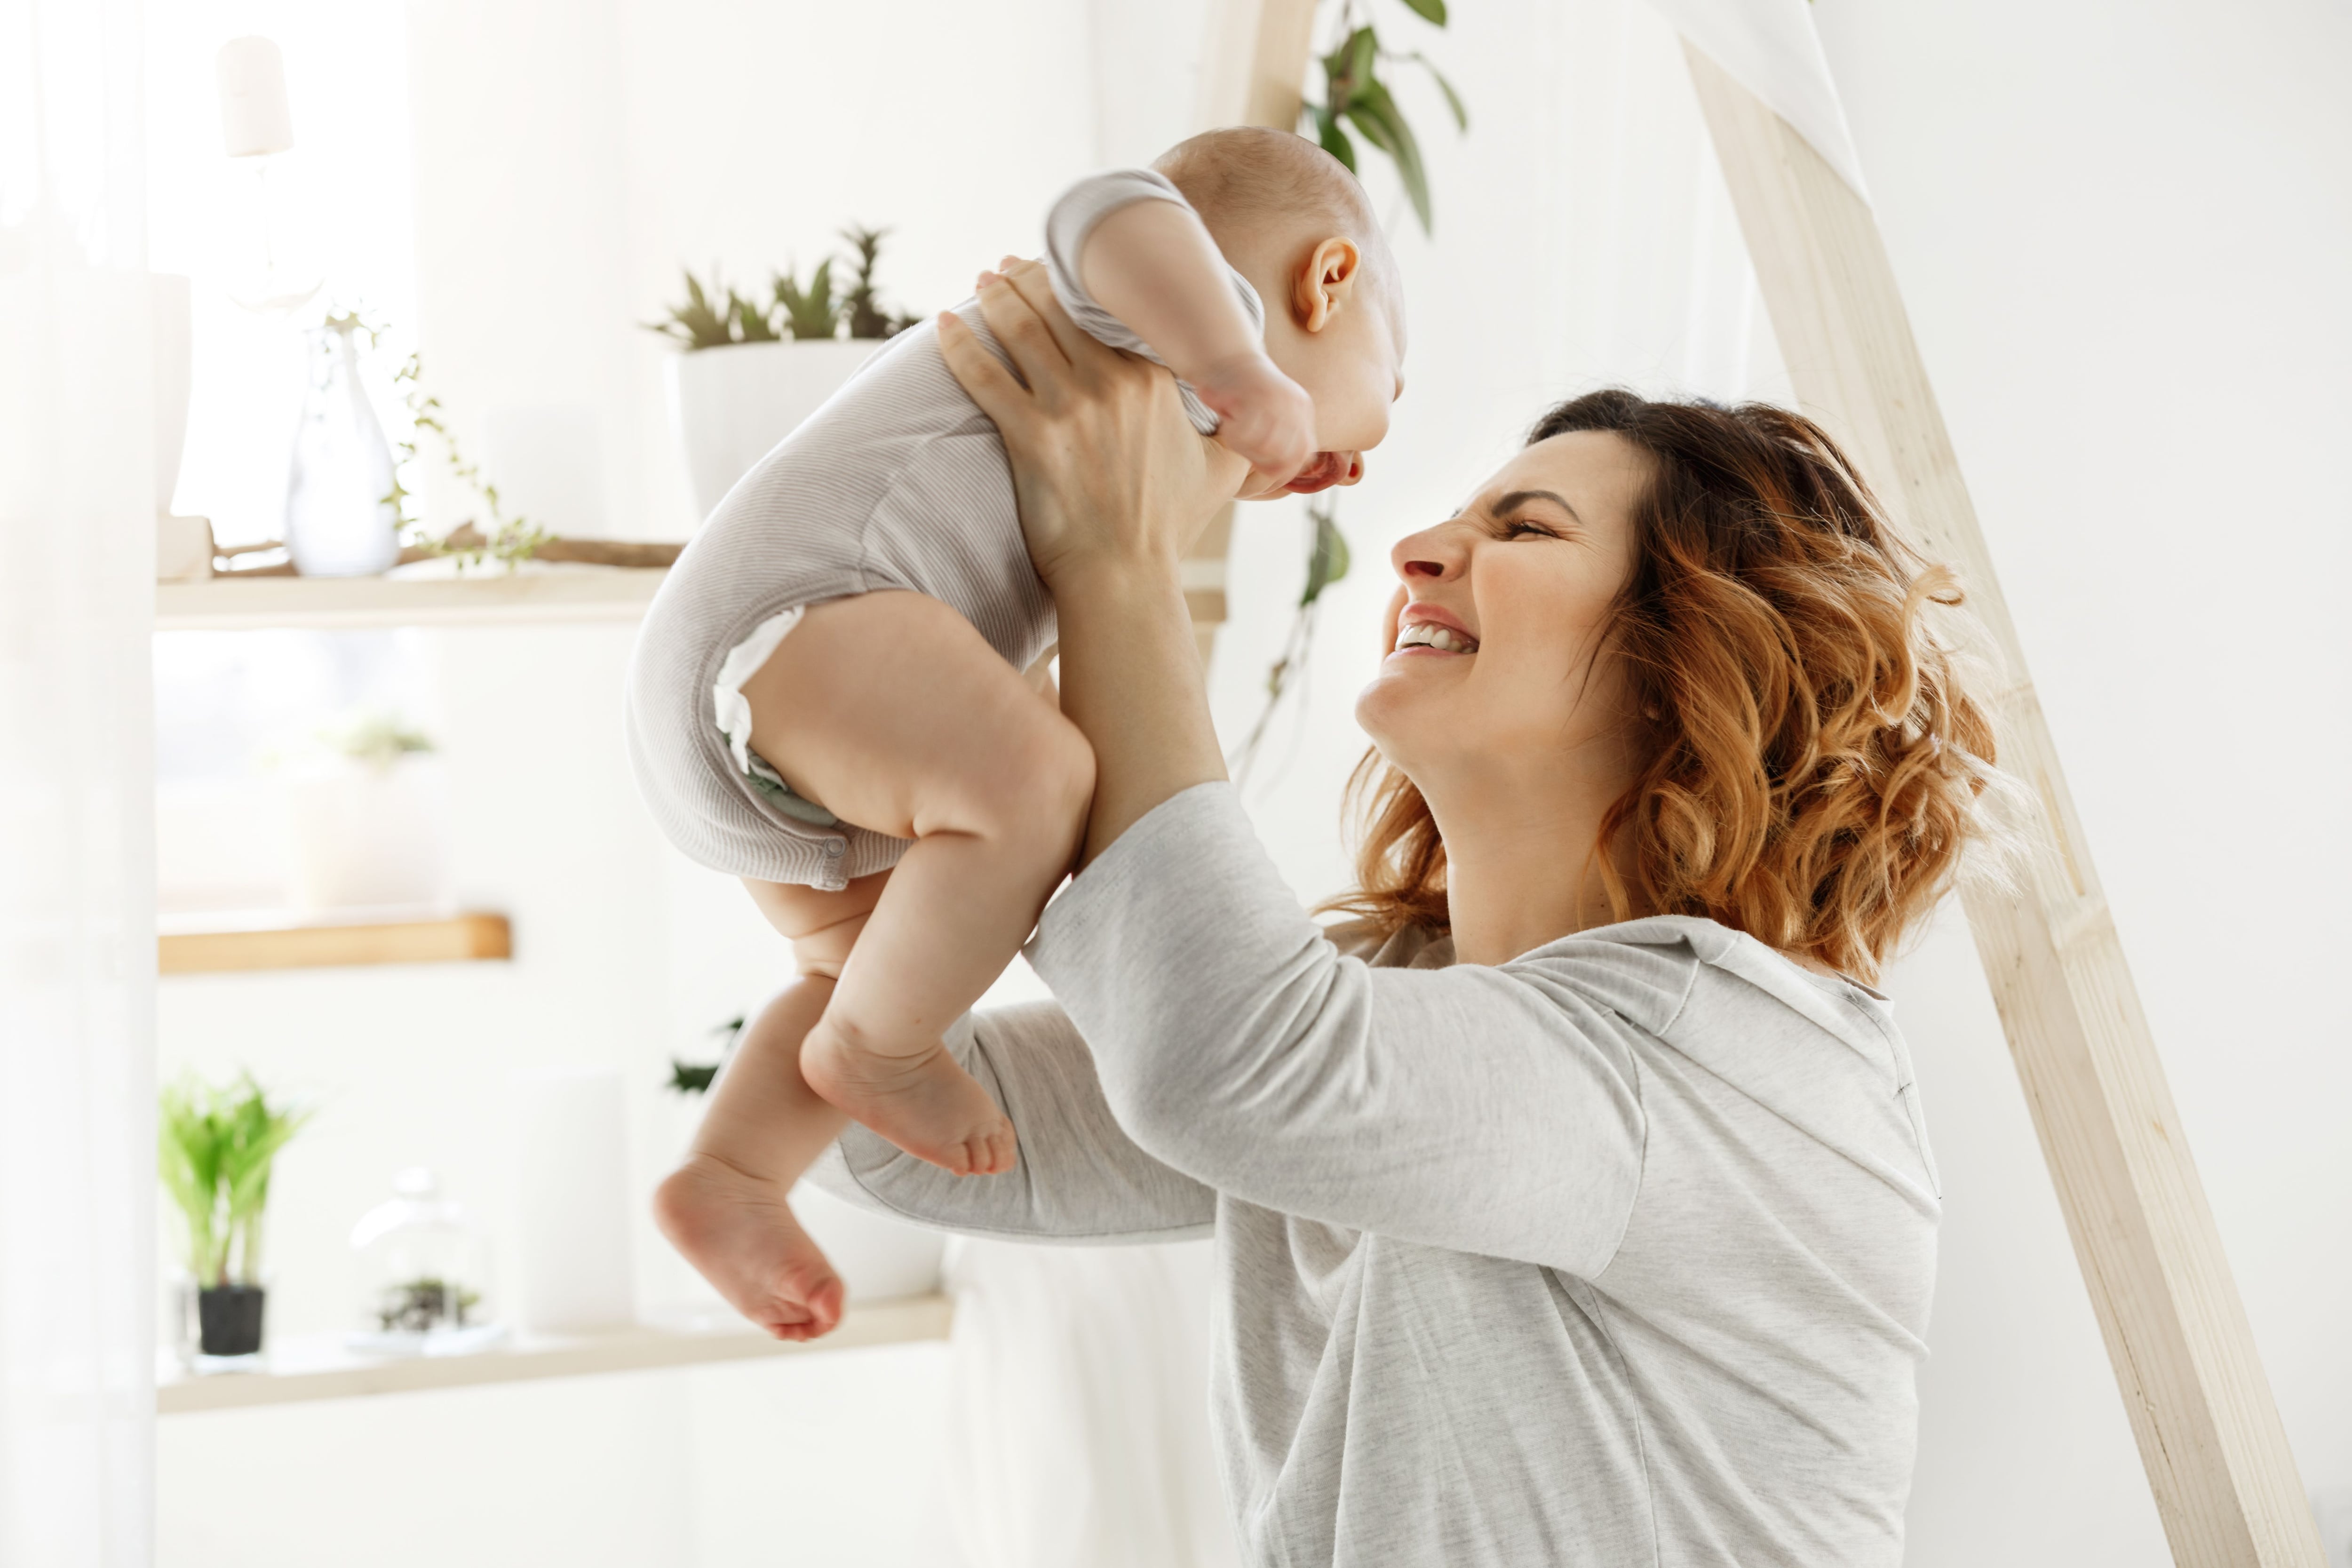 Diversos estudios han destacado la importancia de la risa en las interacciones madre-bebé, fortaleciendo los vínculos emocionales. A los 2-4 meses ya comienzan a sonreírse